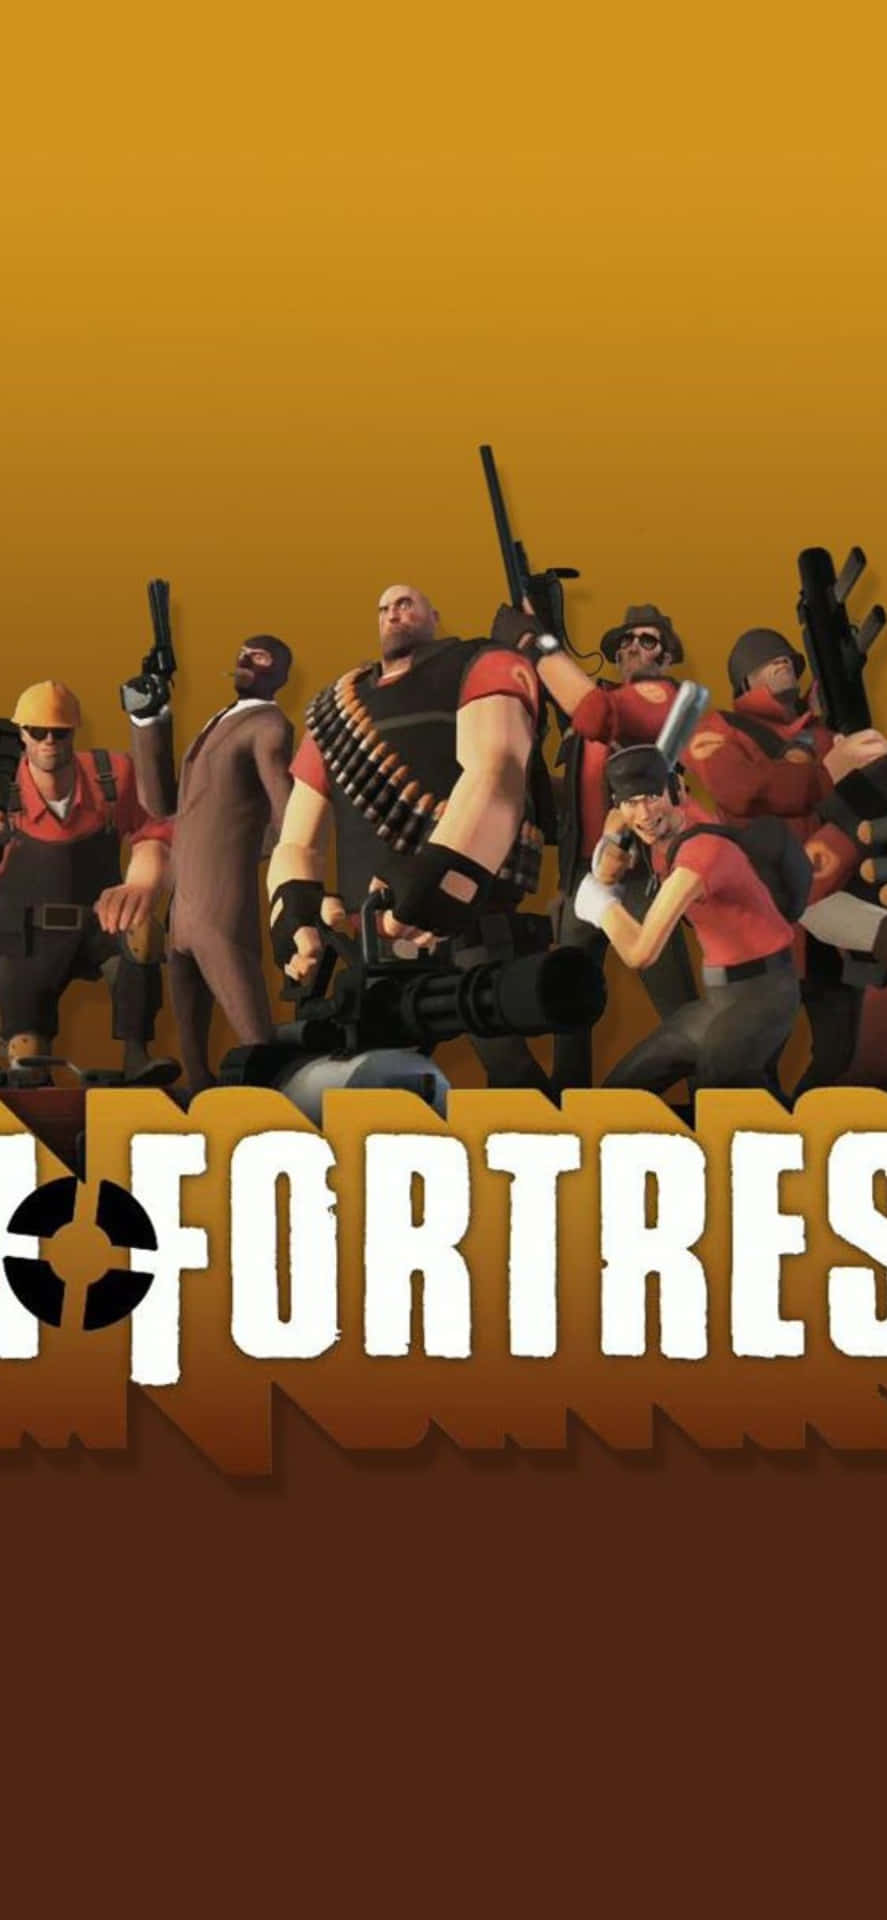 Armaspara Team Fortress 2 En El Fondo De Pantalla Del Iphone Xs